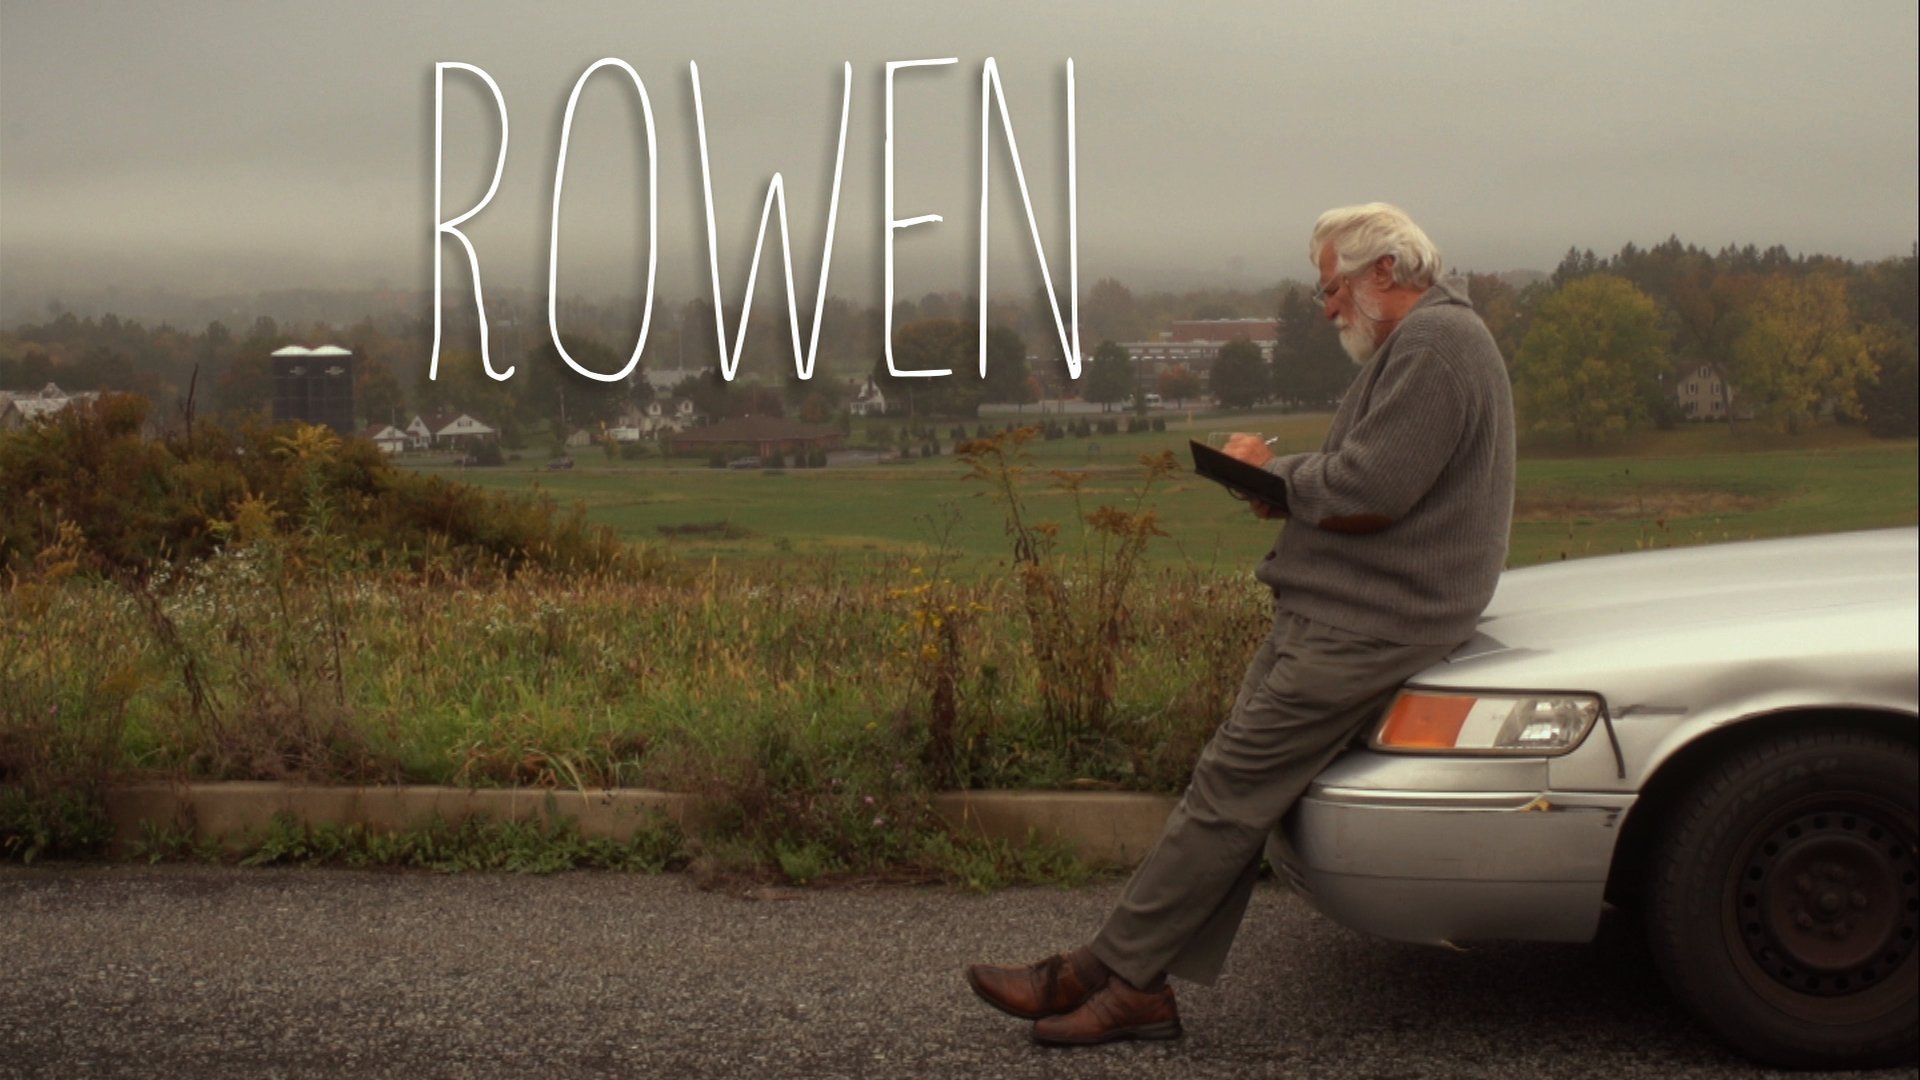 Ed Schiff as Rowen. 'Rowen' A Film By Joshua Rubenstein.